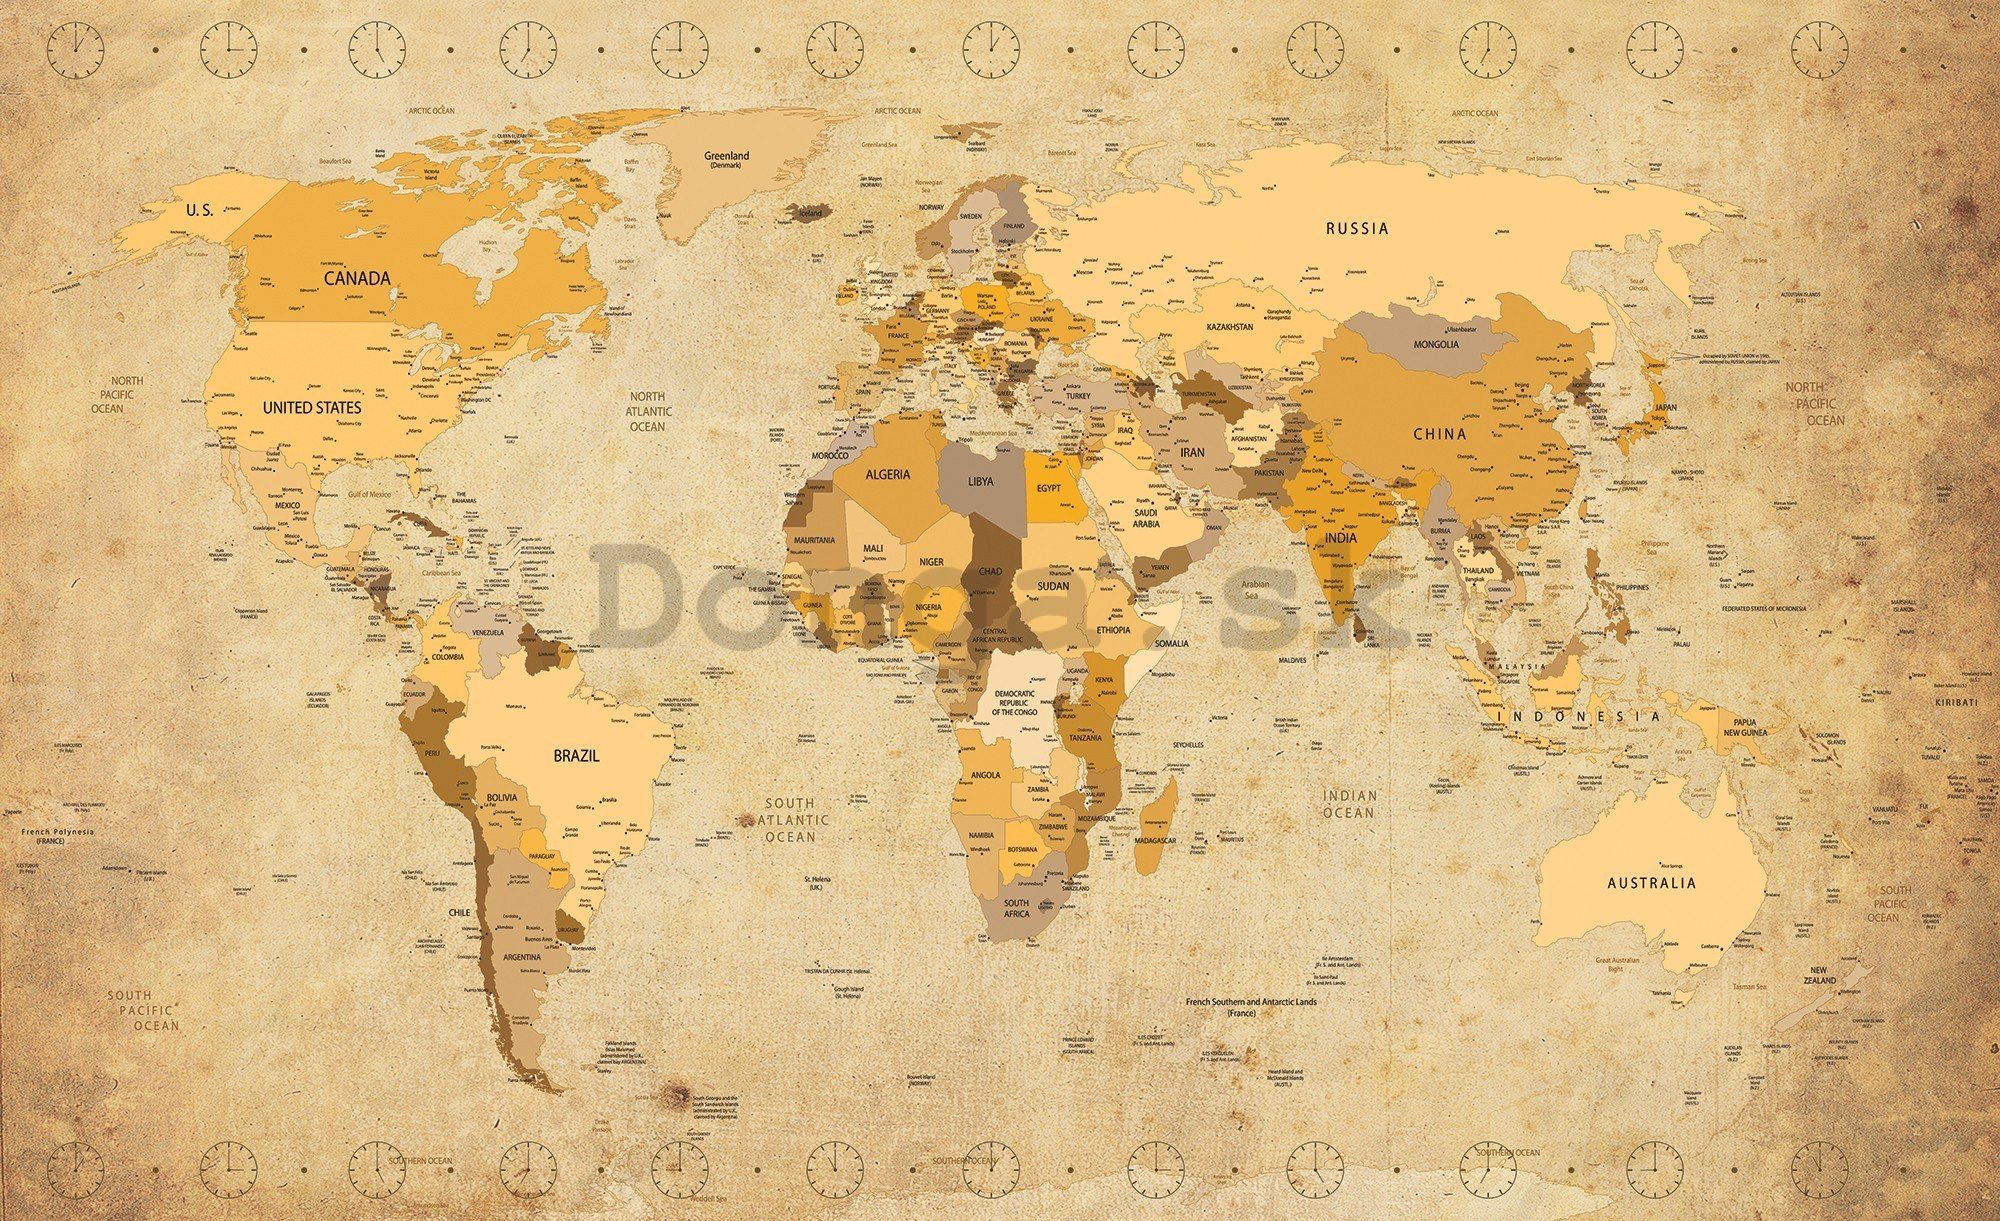 Fototapeta vliesová: Mapa sveta (Vintage) - 416x254 cm